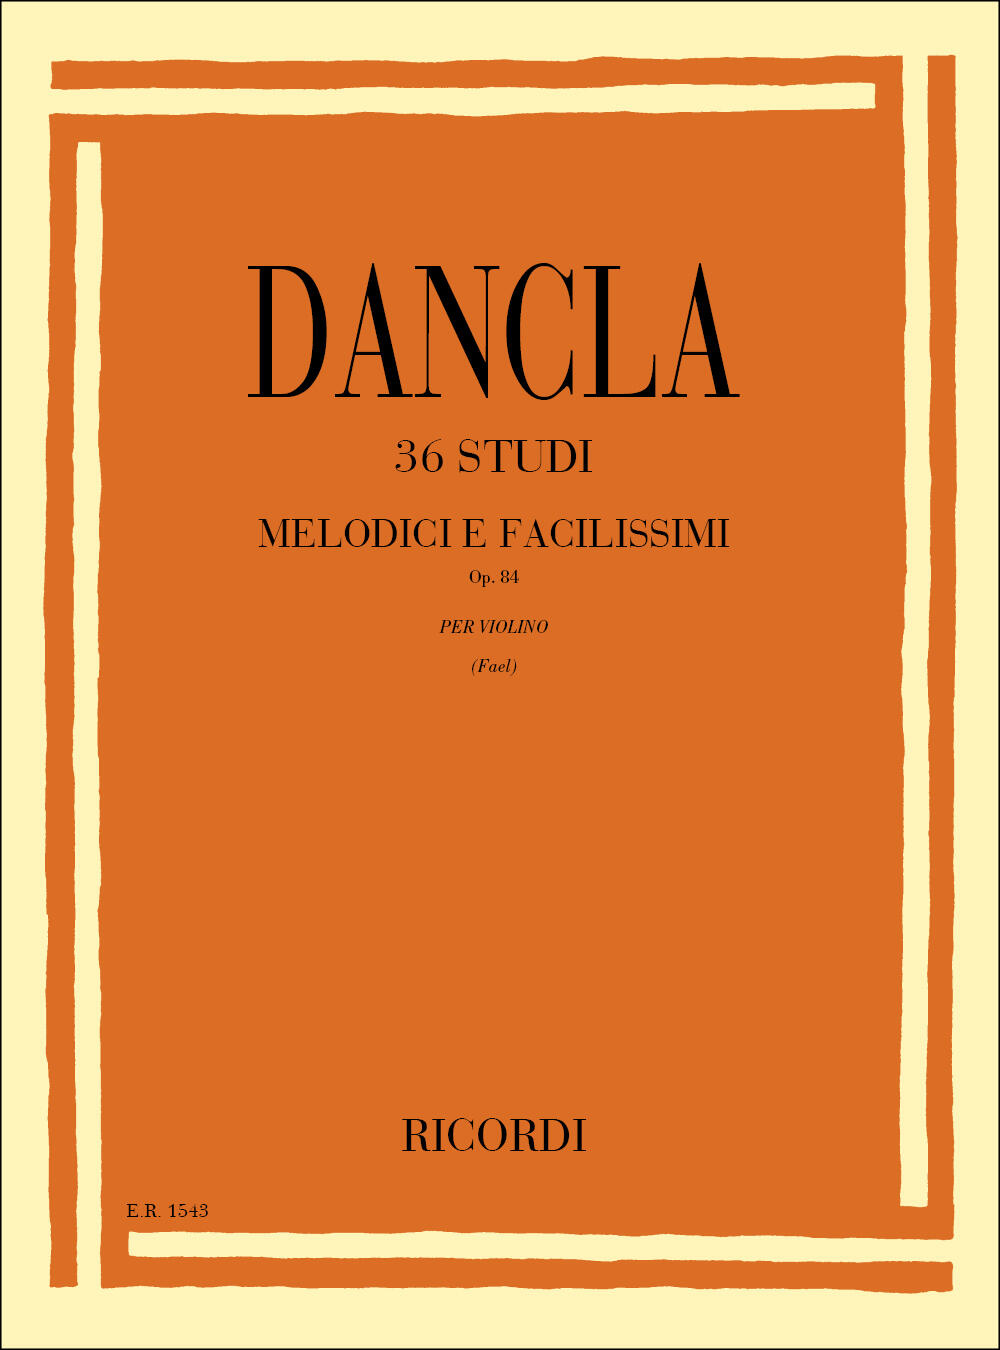 Ricordi 36 Etudes Mélodiques op.84 pour violon 36 Studi melodici e facilissimi Op. 84 per Violino Charles Dancla Violin : photo 1